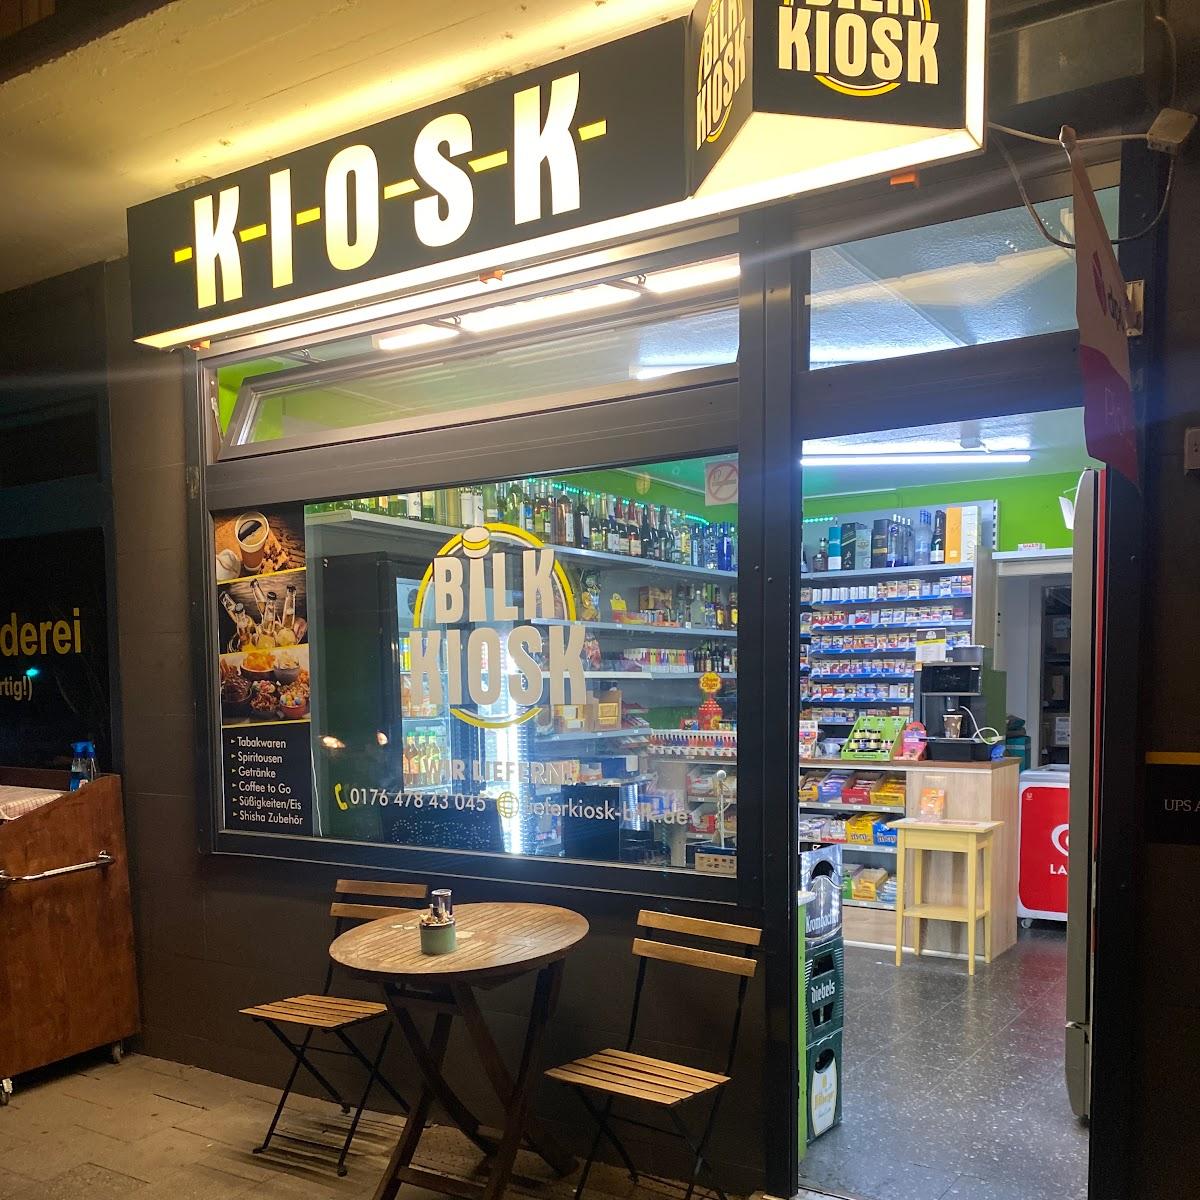 Restaurant "Bilk Kiosk" in Düsseldorf